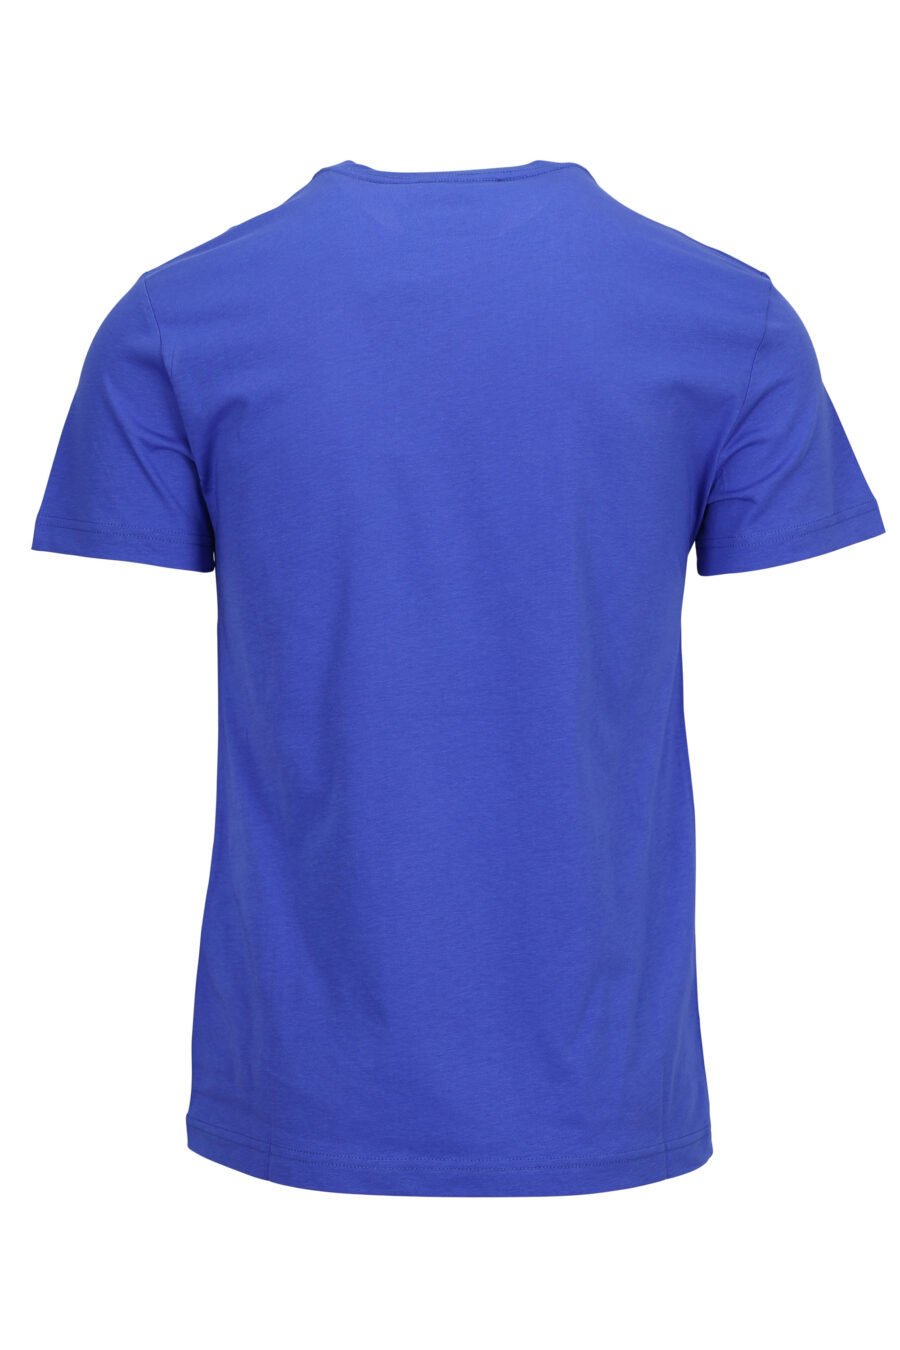 Camiseta azul con maxilogo dorado brillante - 8052019580044 1